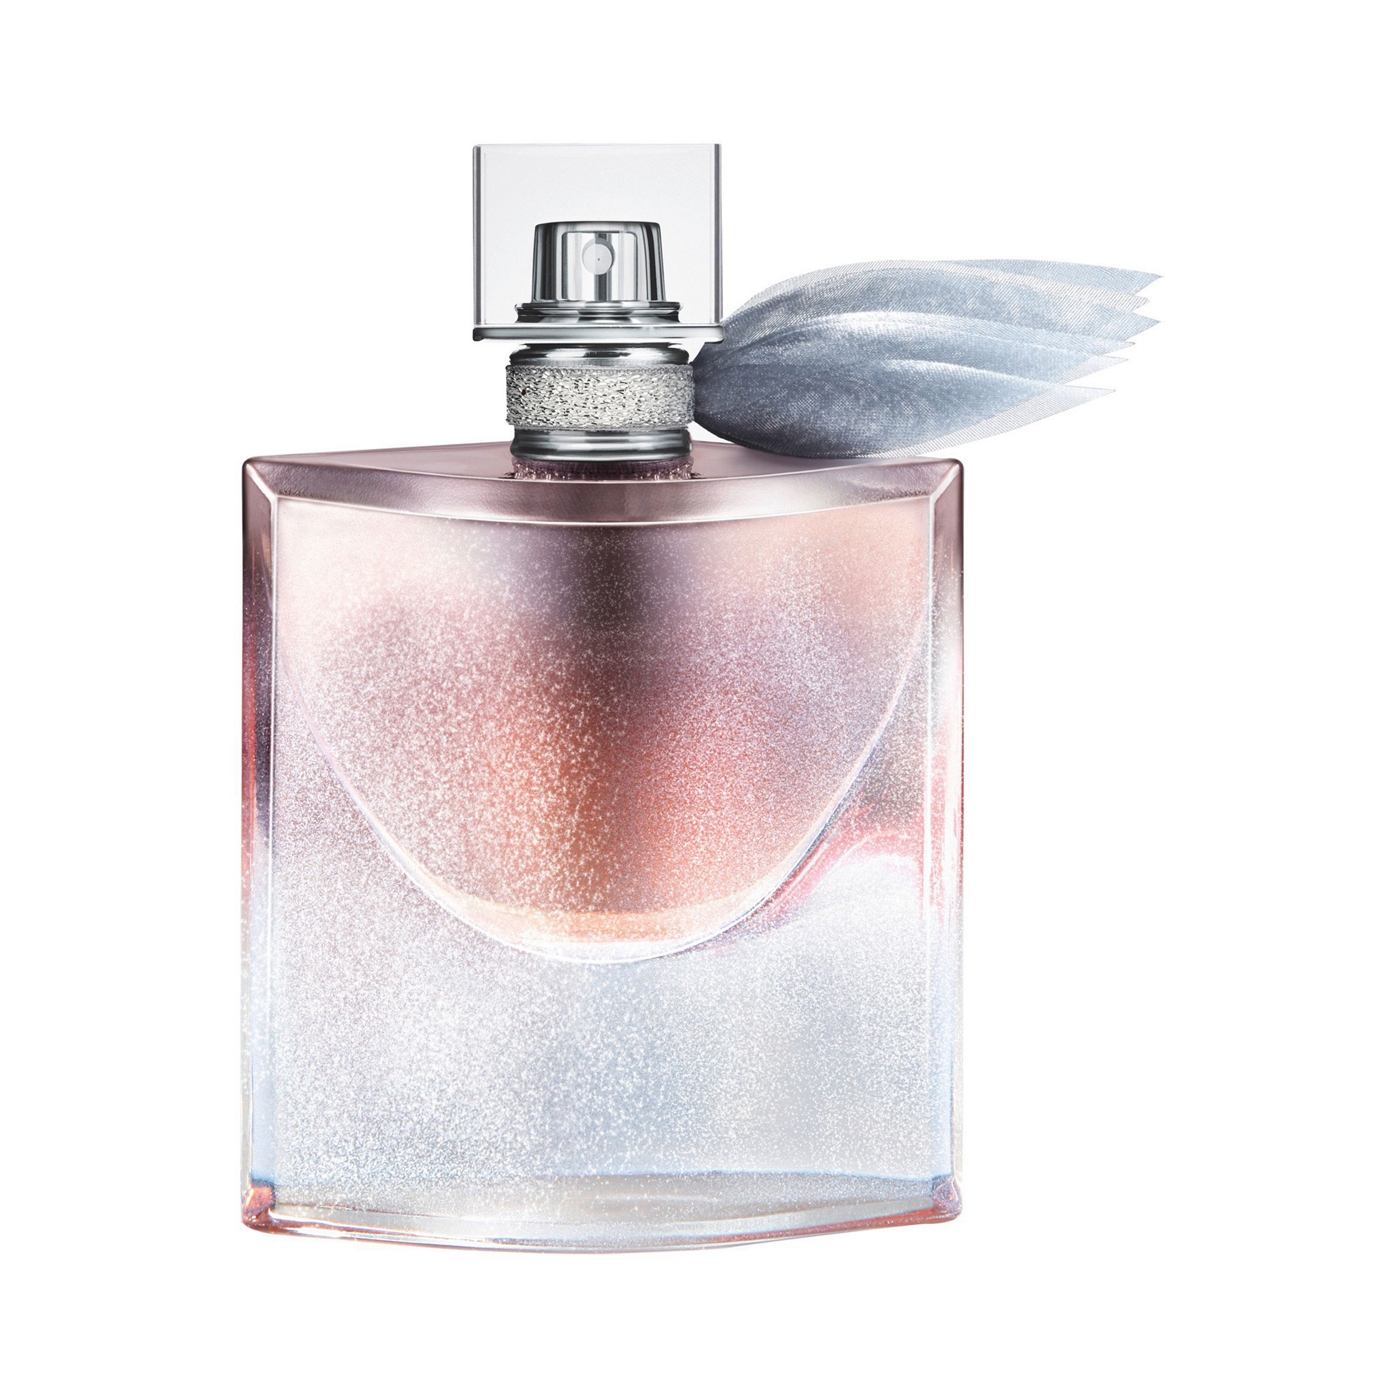 Lancôme Exclusive La vie est belle 50ml Eau de Parfum Limited Edition